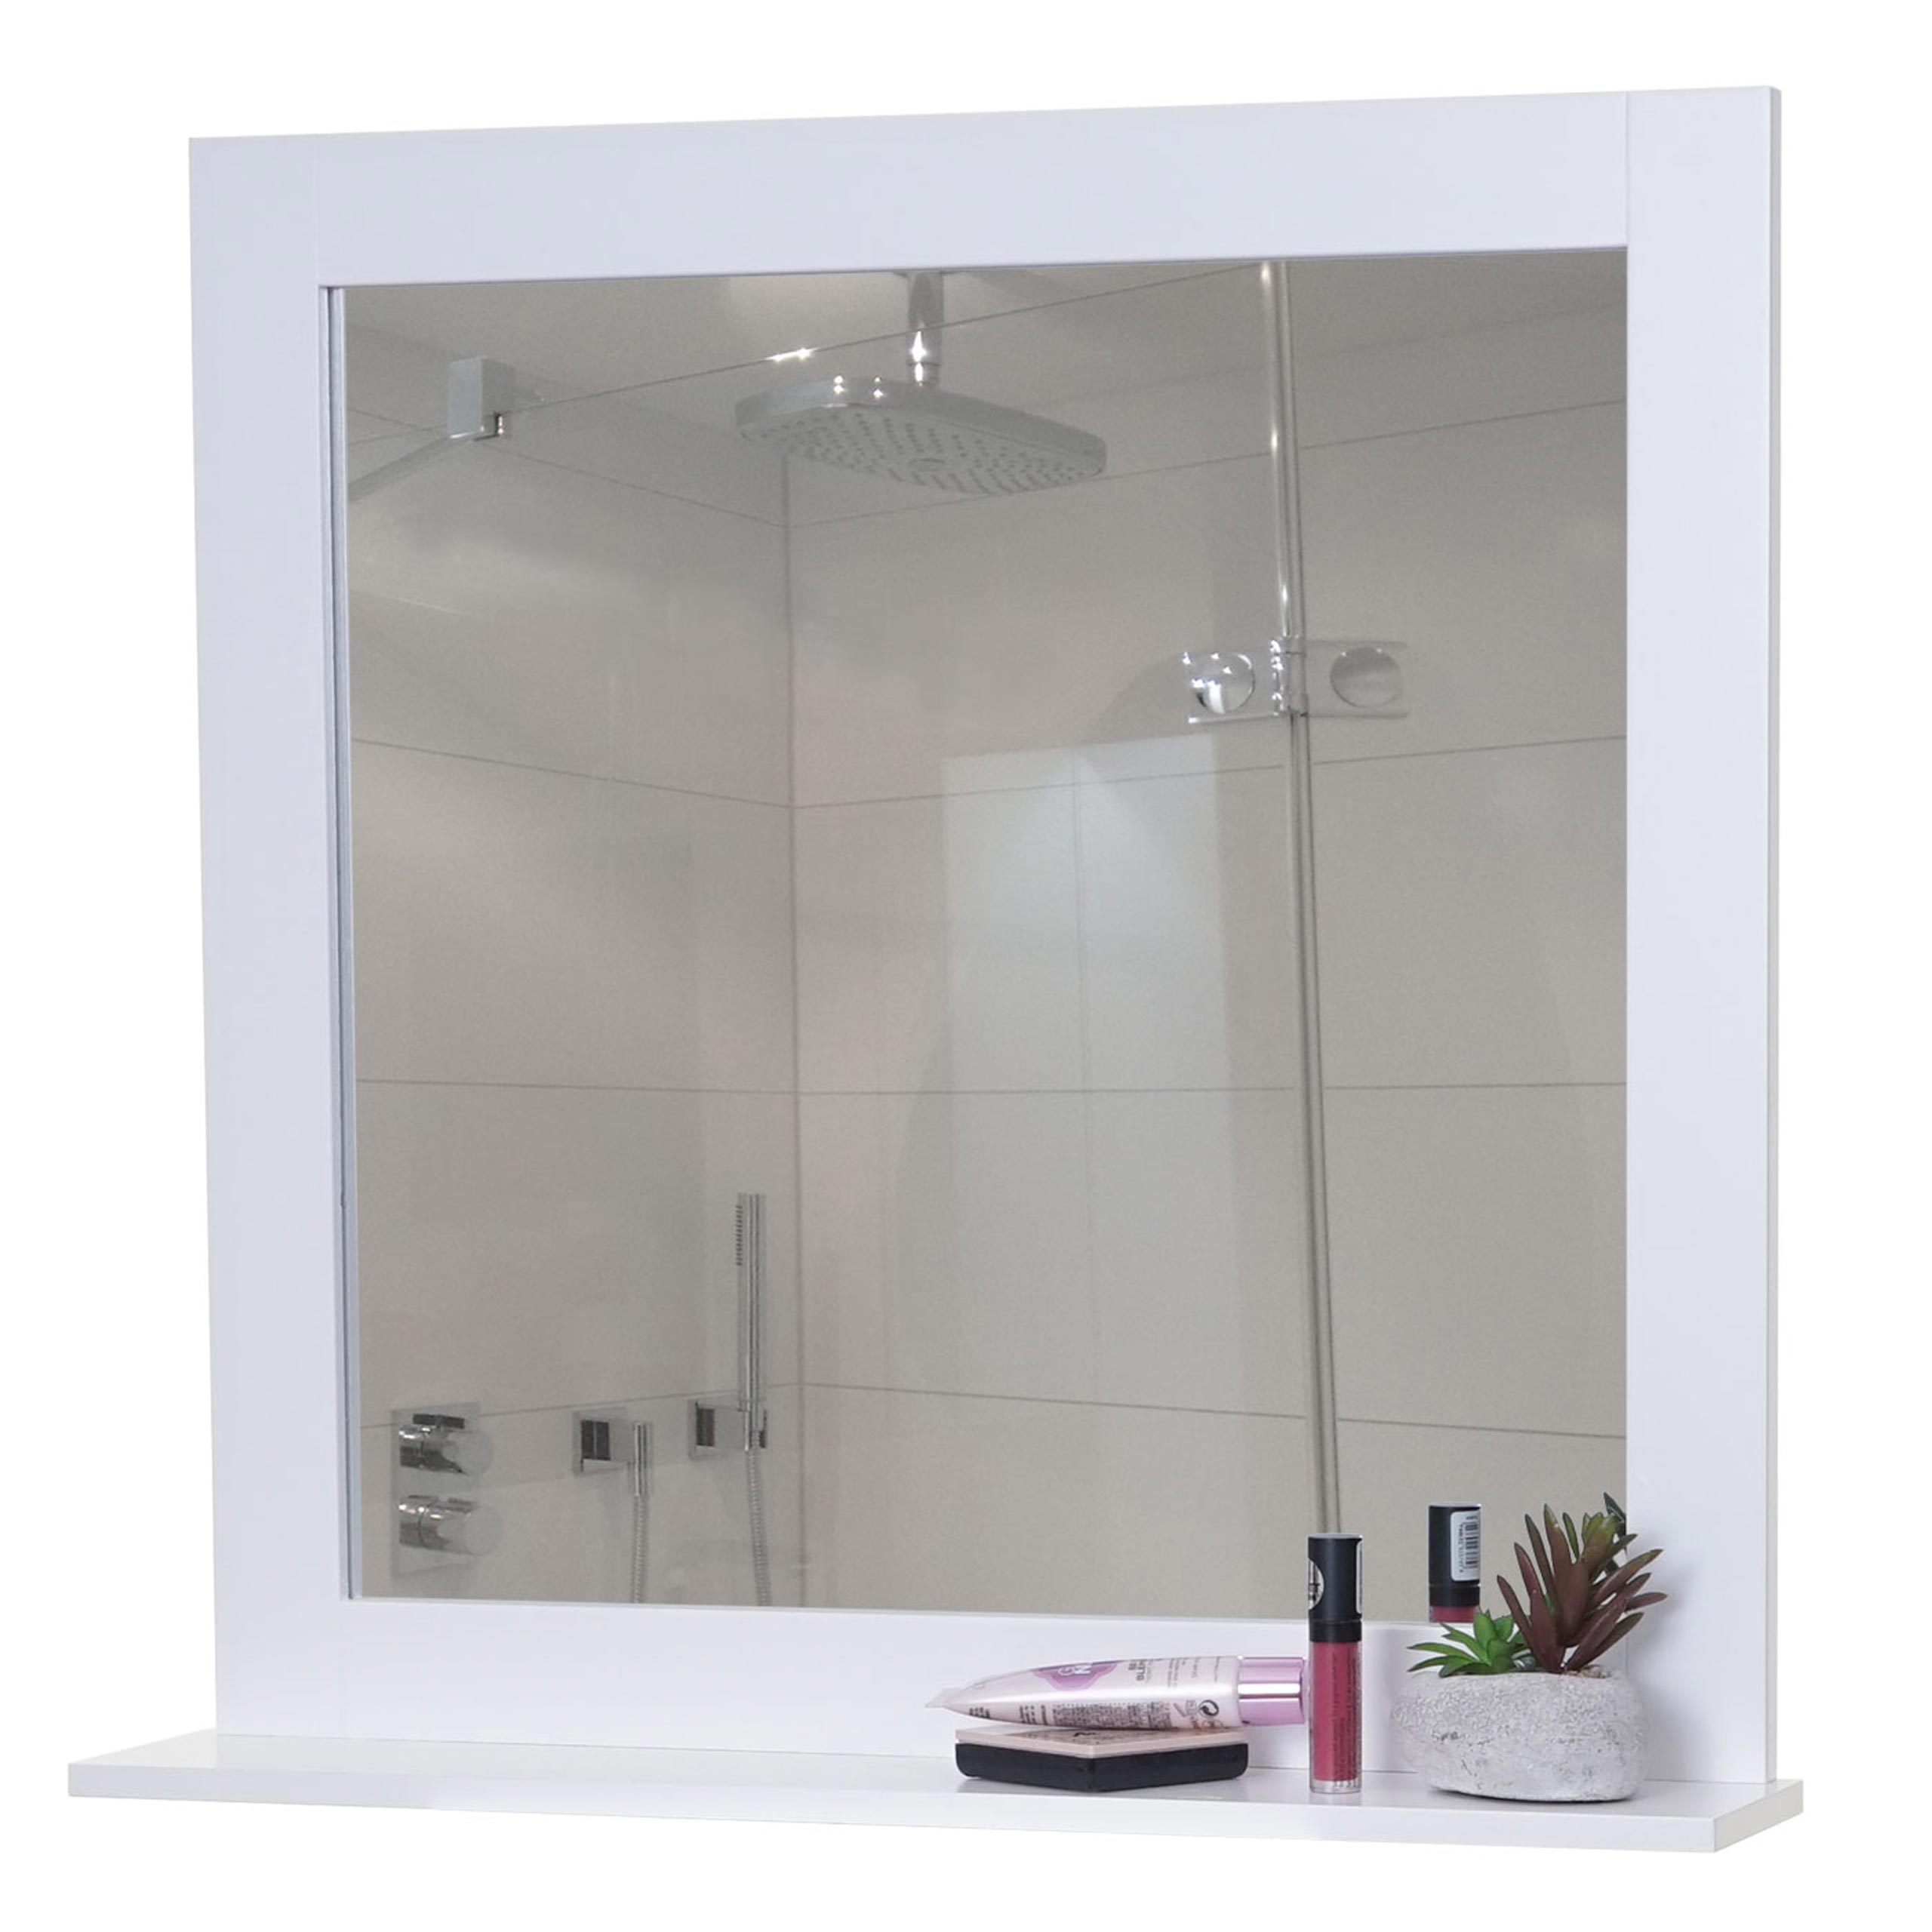 Wandspiegel HWC-F75, Badezimmer Badspiegel Spiegel, Ablagefläche Landhaus  58x59x12cm weiß von Heute-Wohnen